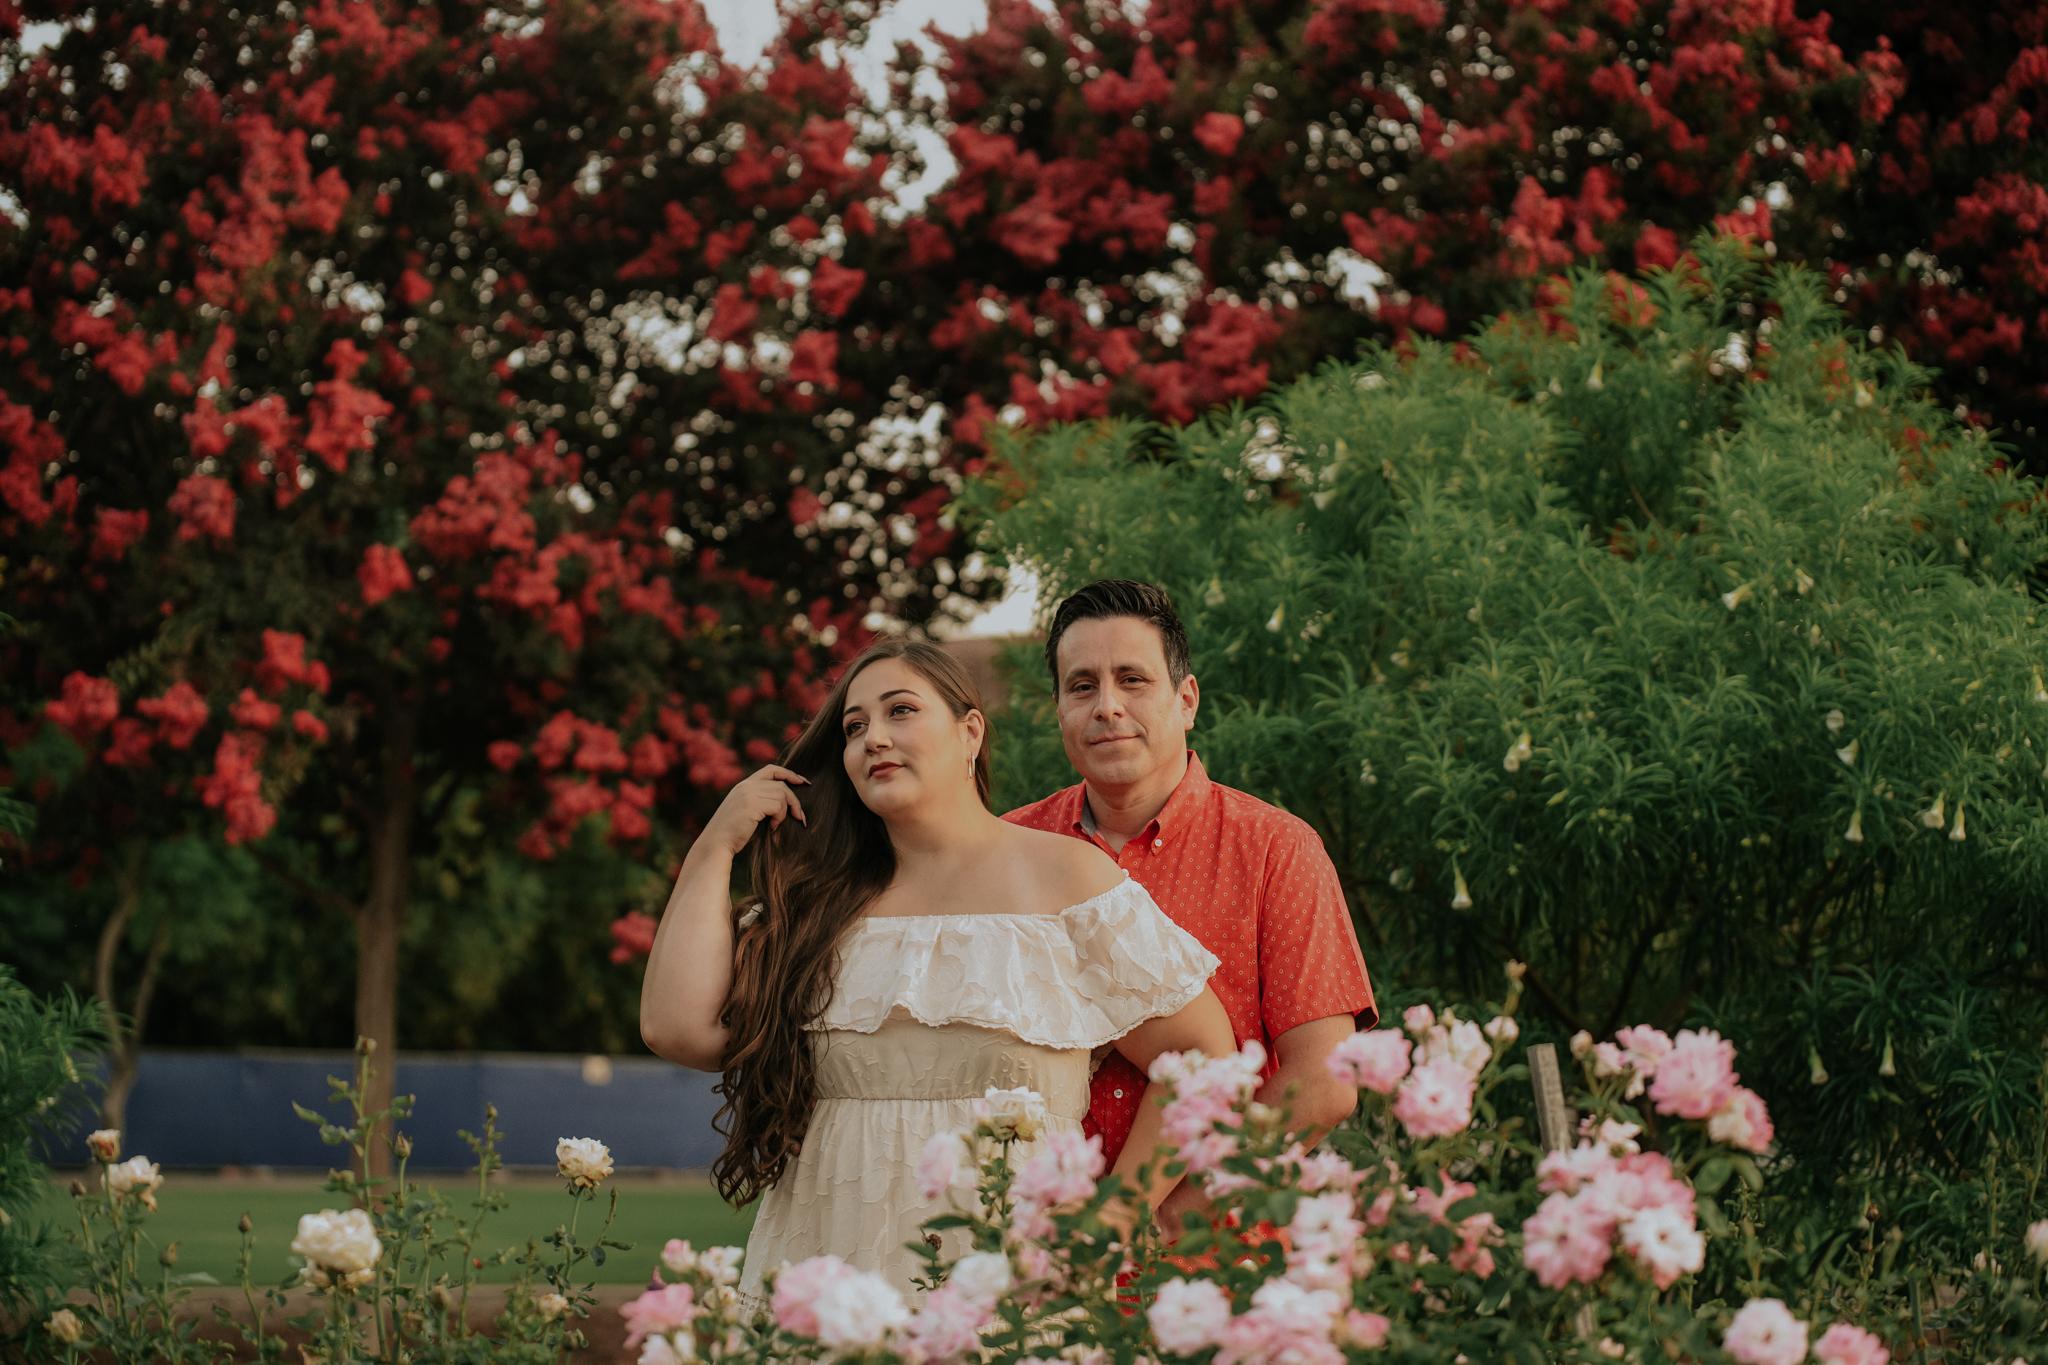 The Wedding Website of Esmeralda Cabral and Alejandro Sanchez Nuñez